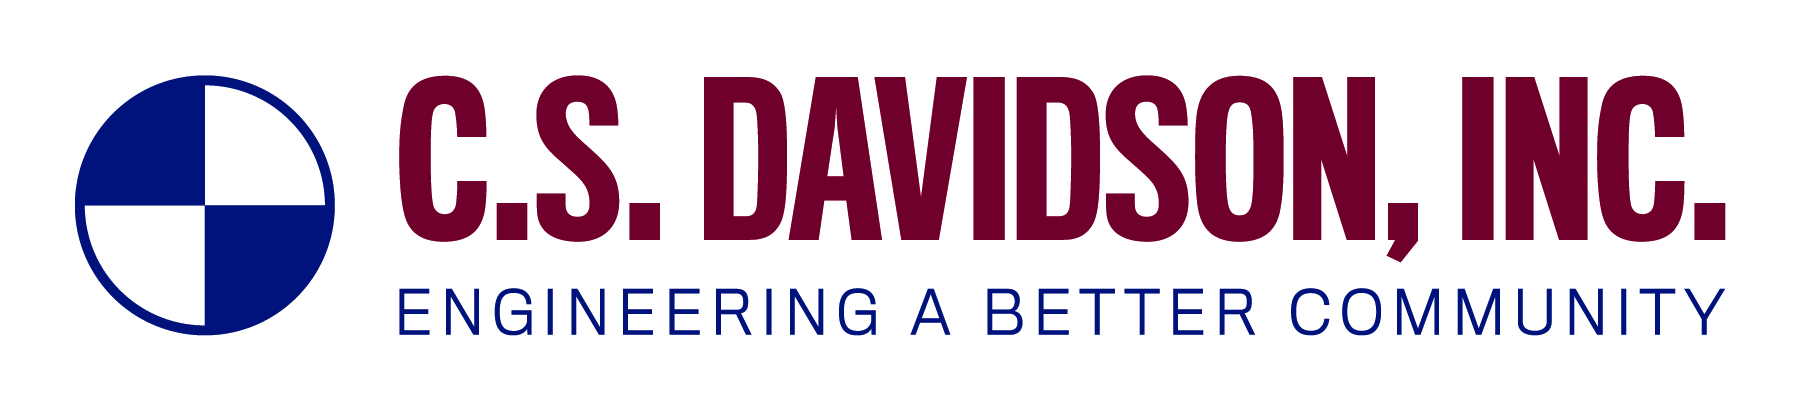 C.S. Davidson, Inc.  logo